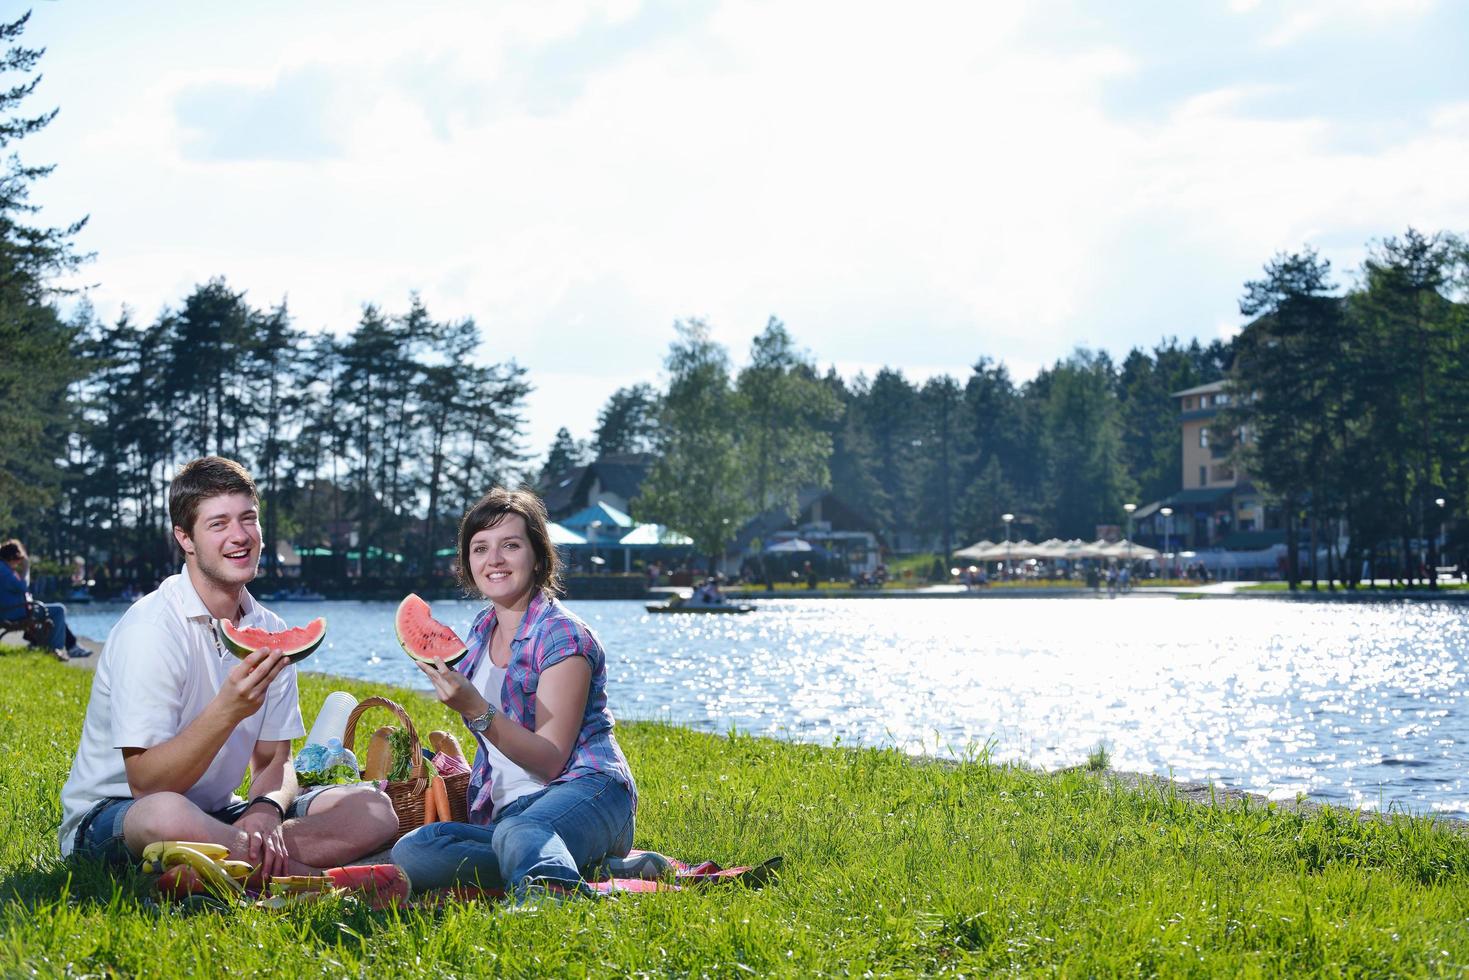 glückliches junges paar, das ein picknick im freien hat foto